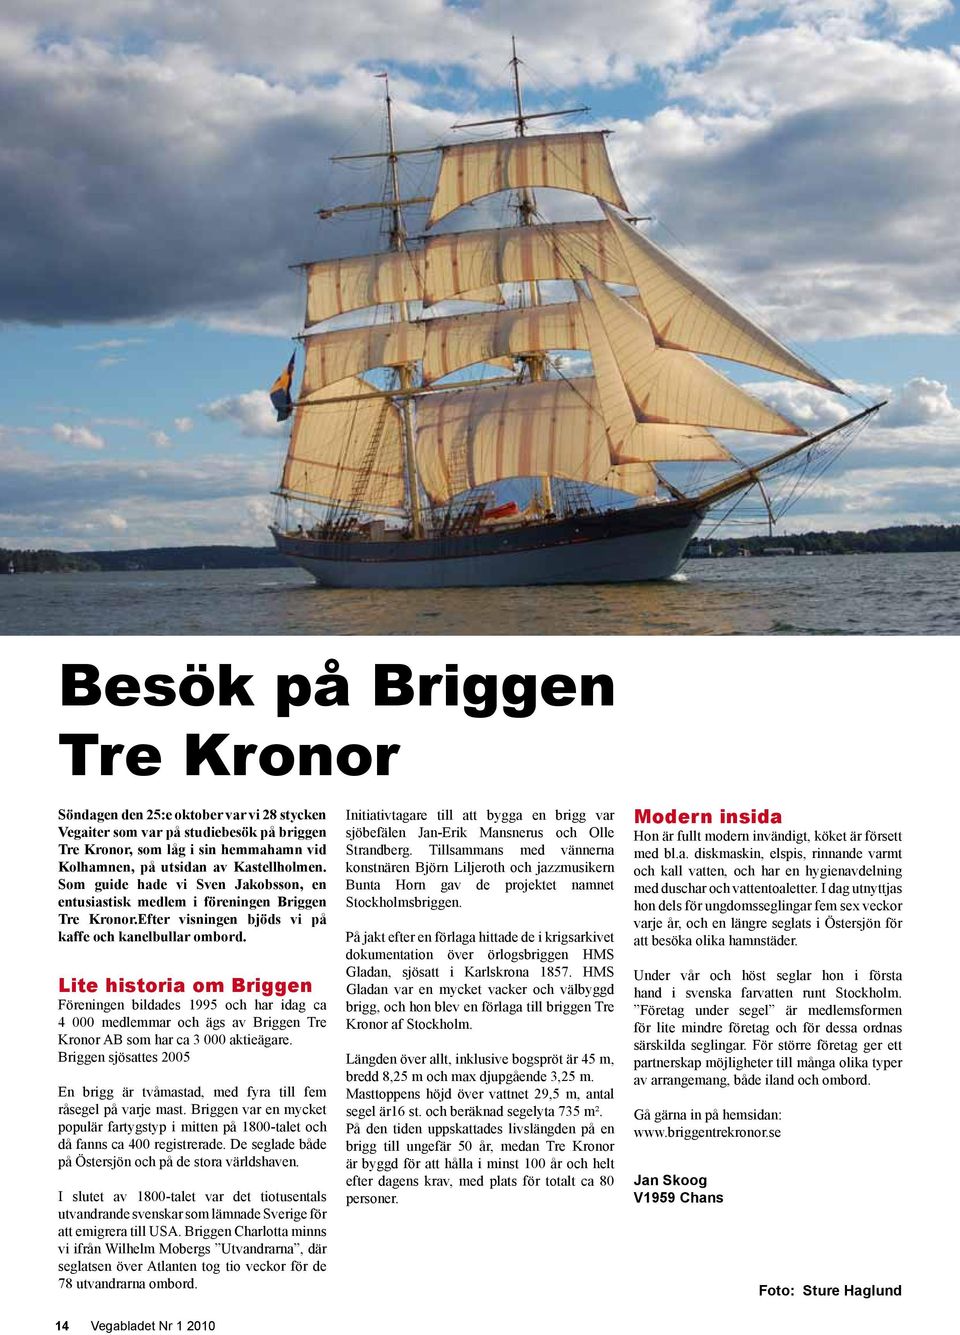 Lite historia om Briggen Föreningen bildades 1995 och har idag ca 4 000 medlemmar och ägs av Briggen Tre Kronor AB som har ca 3 000 aktieägare.